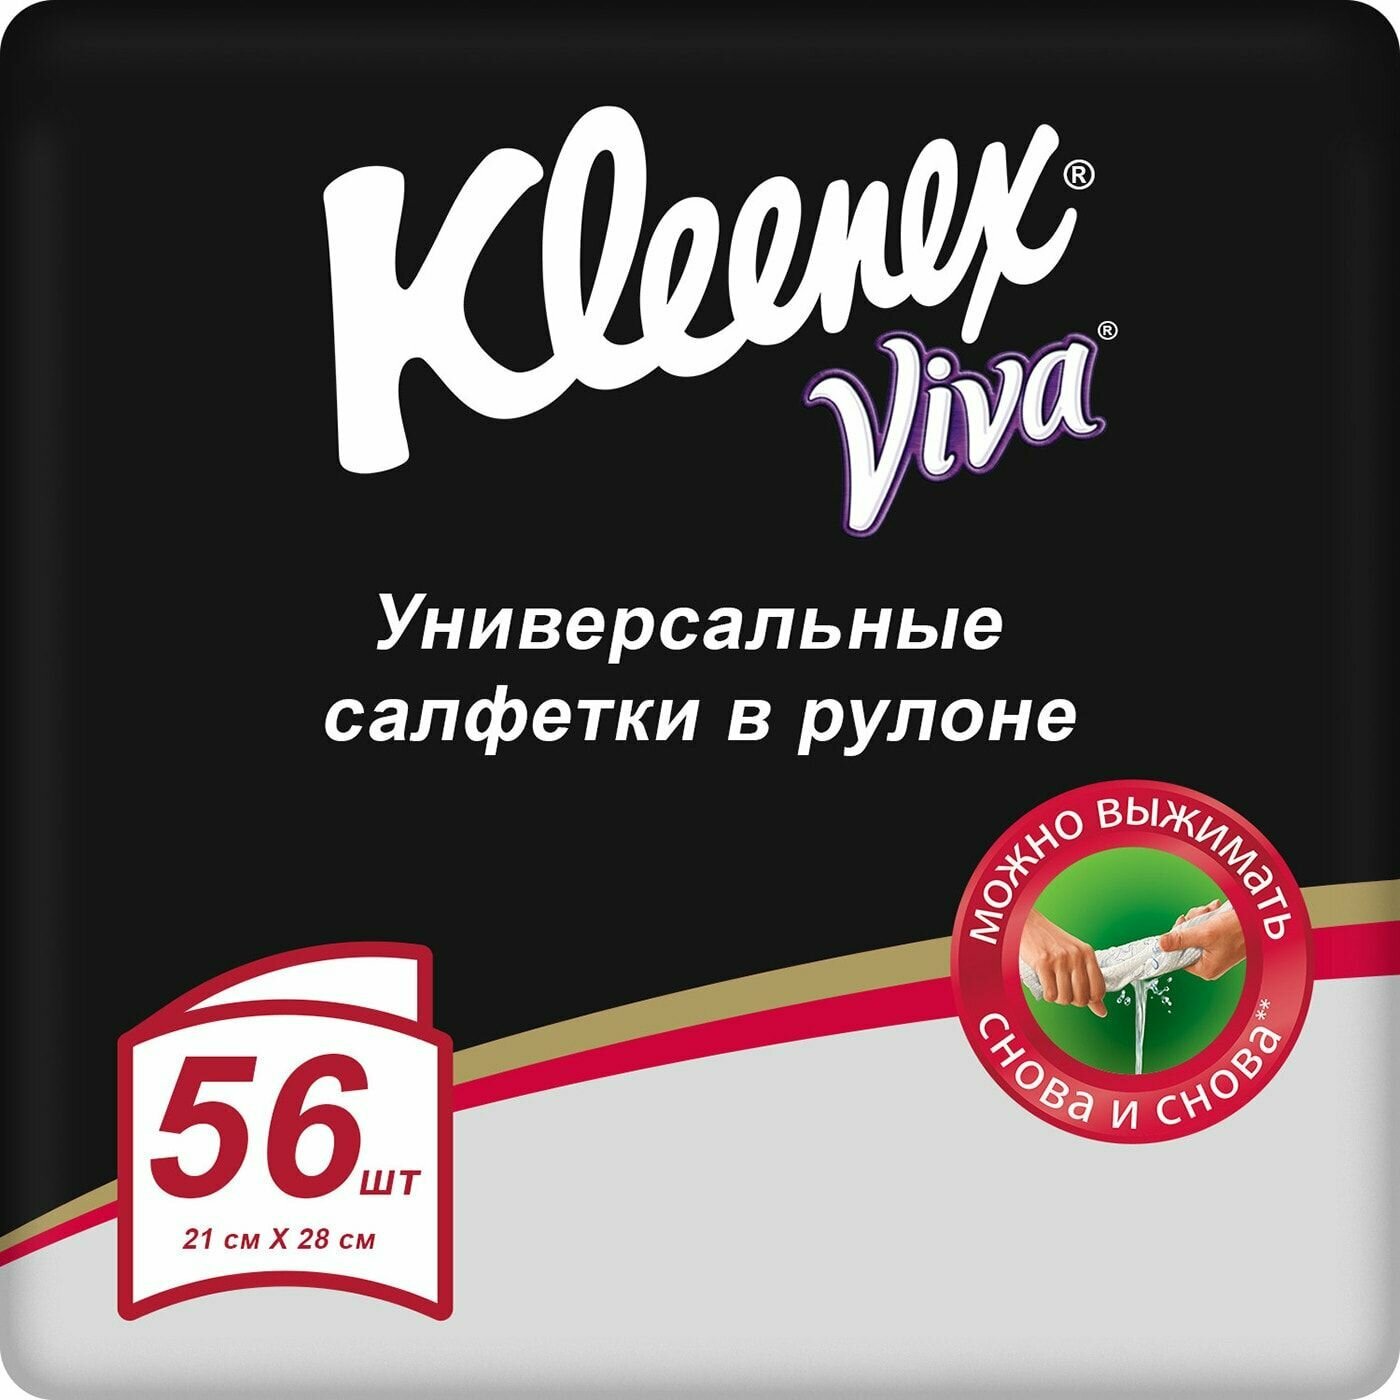 Салфетки Kleenex Viva универсальные в рулоне 56шт 2 шт